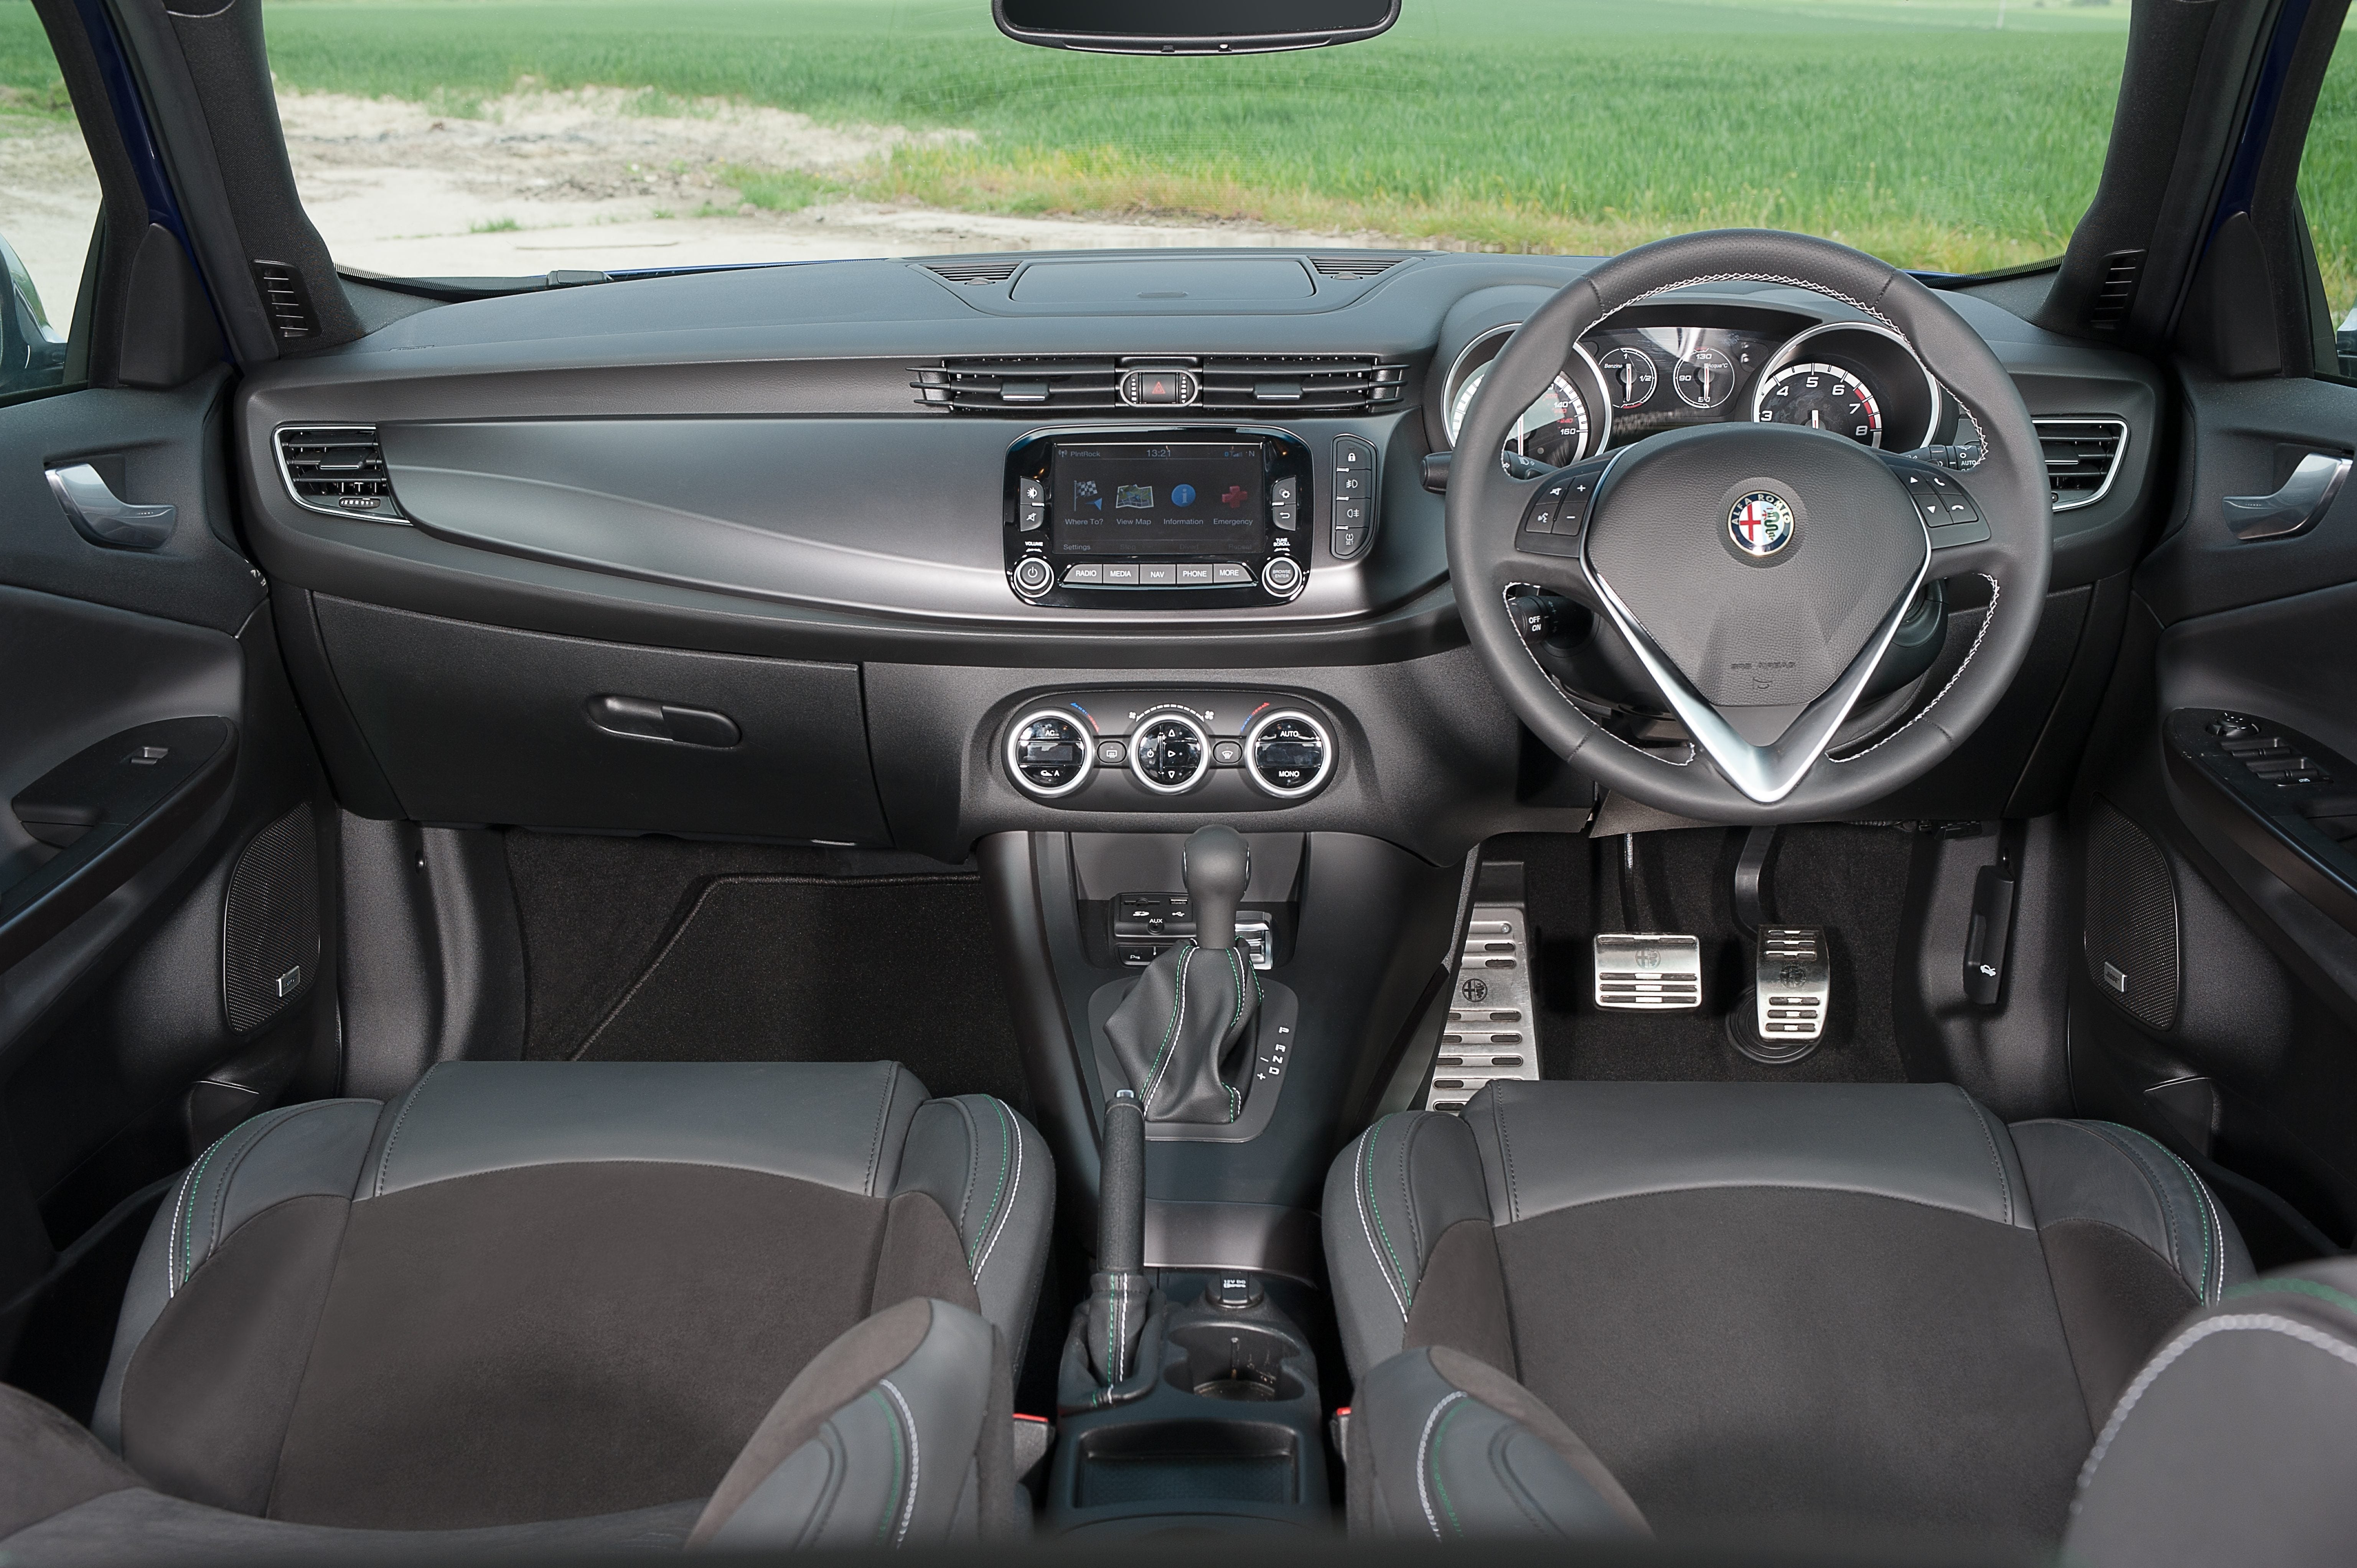 Alfa Romeo Giulietta Review: Interior Front 